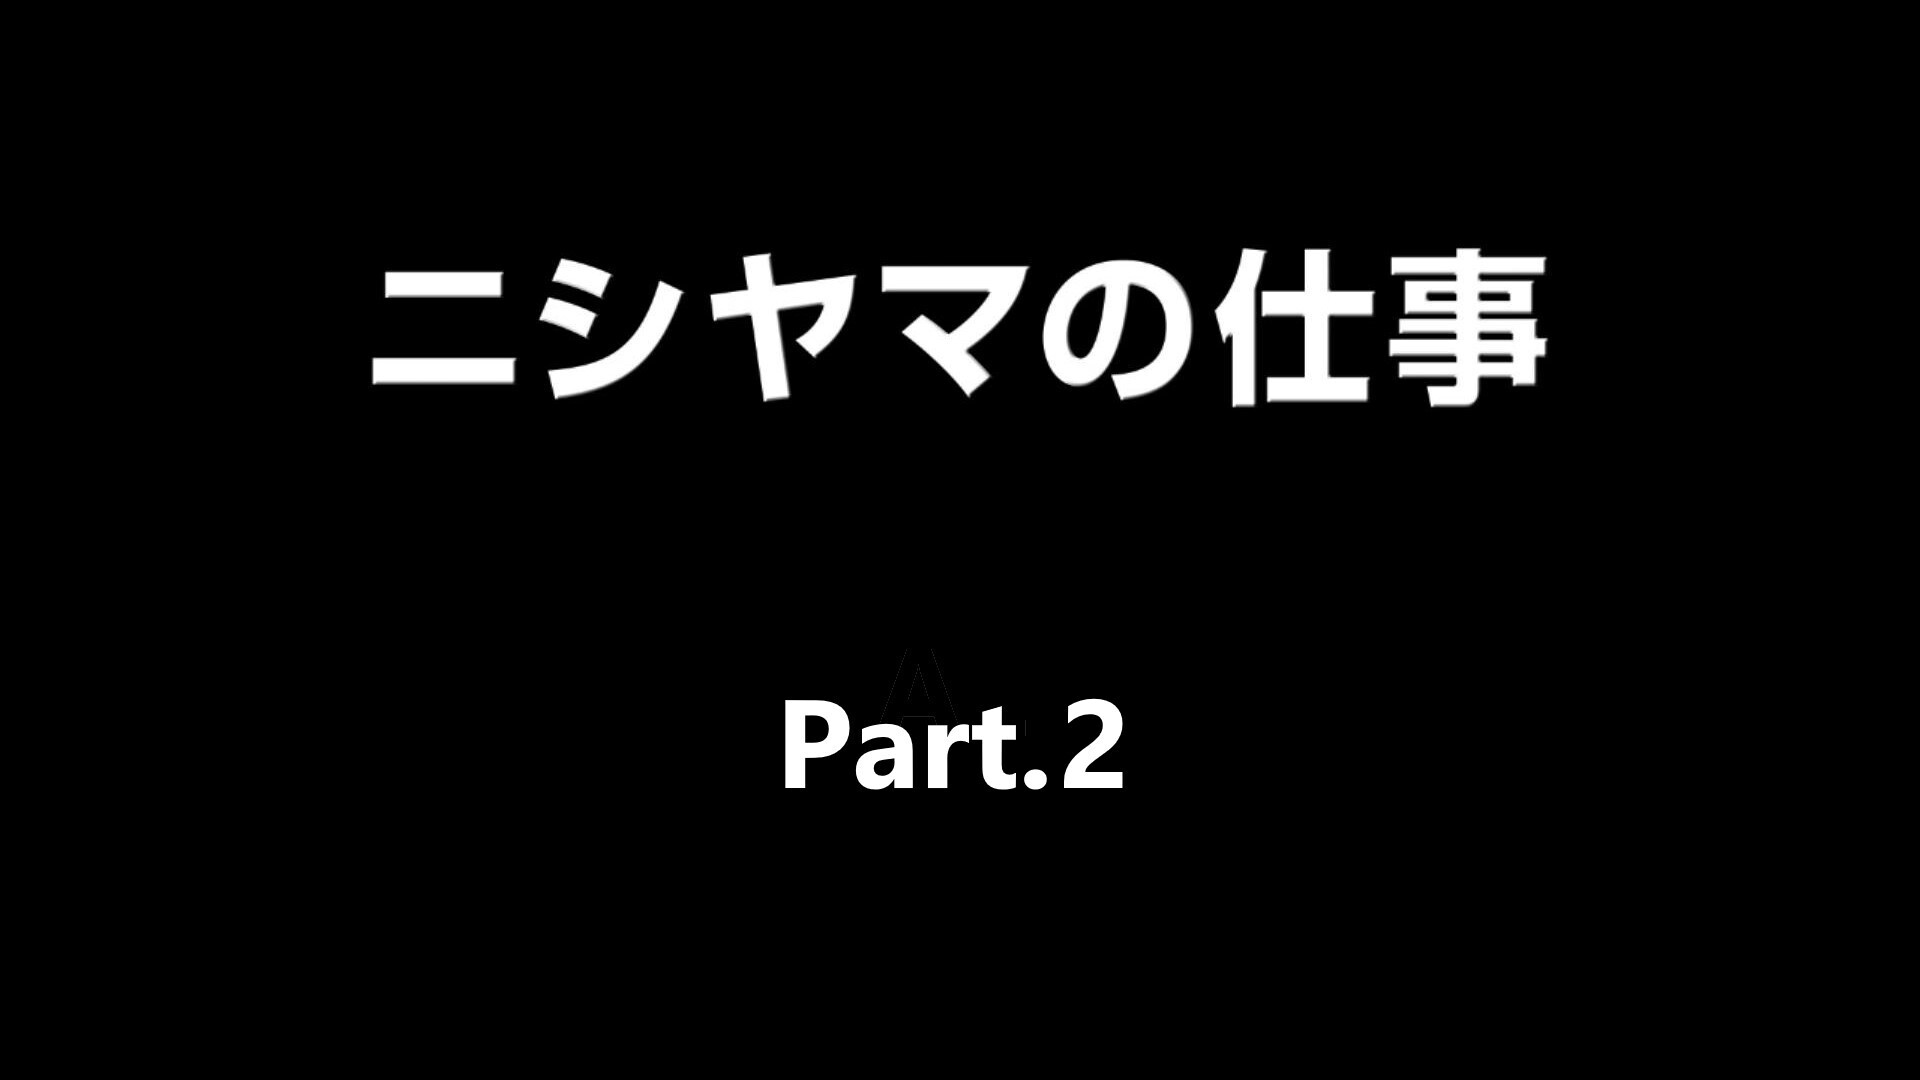 【株式会社ニシヤマ】リクルート映像 Part.2 (8:29)